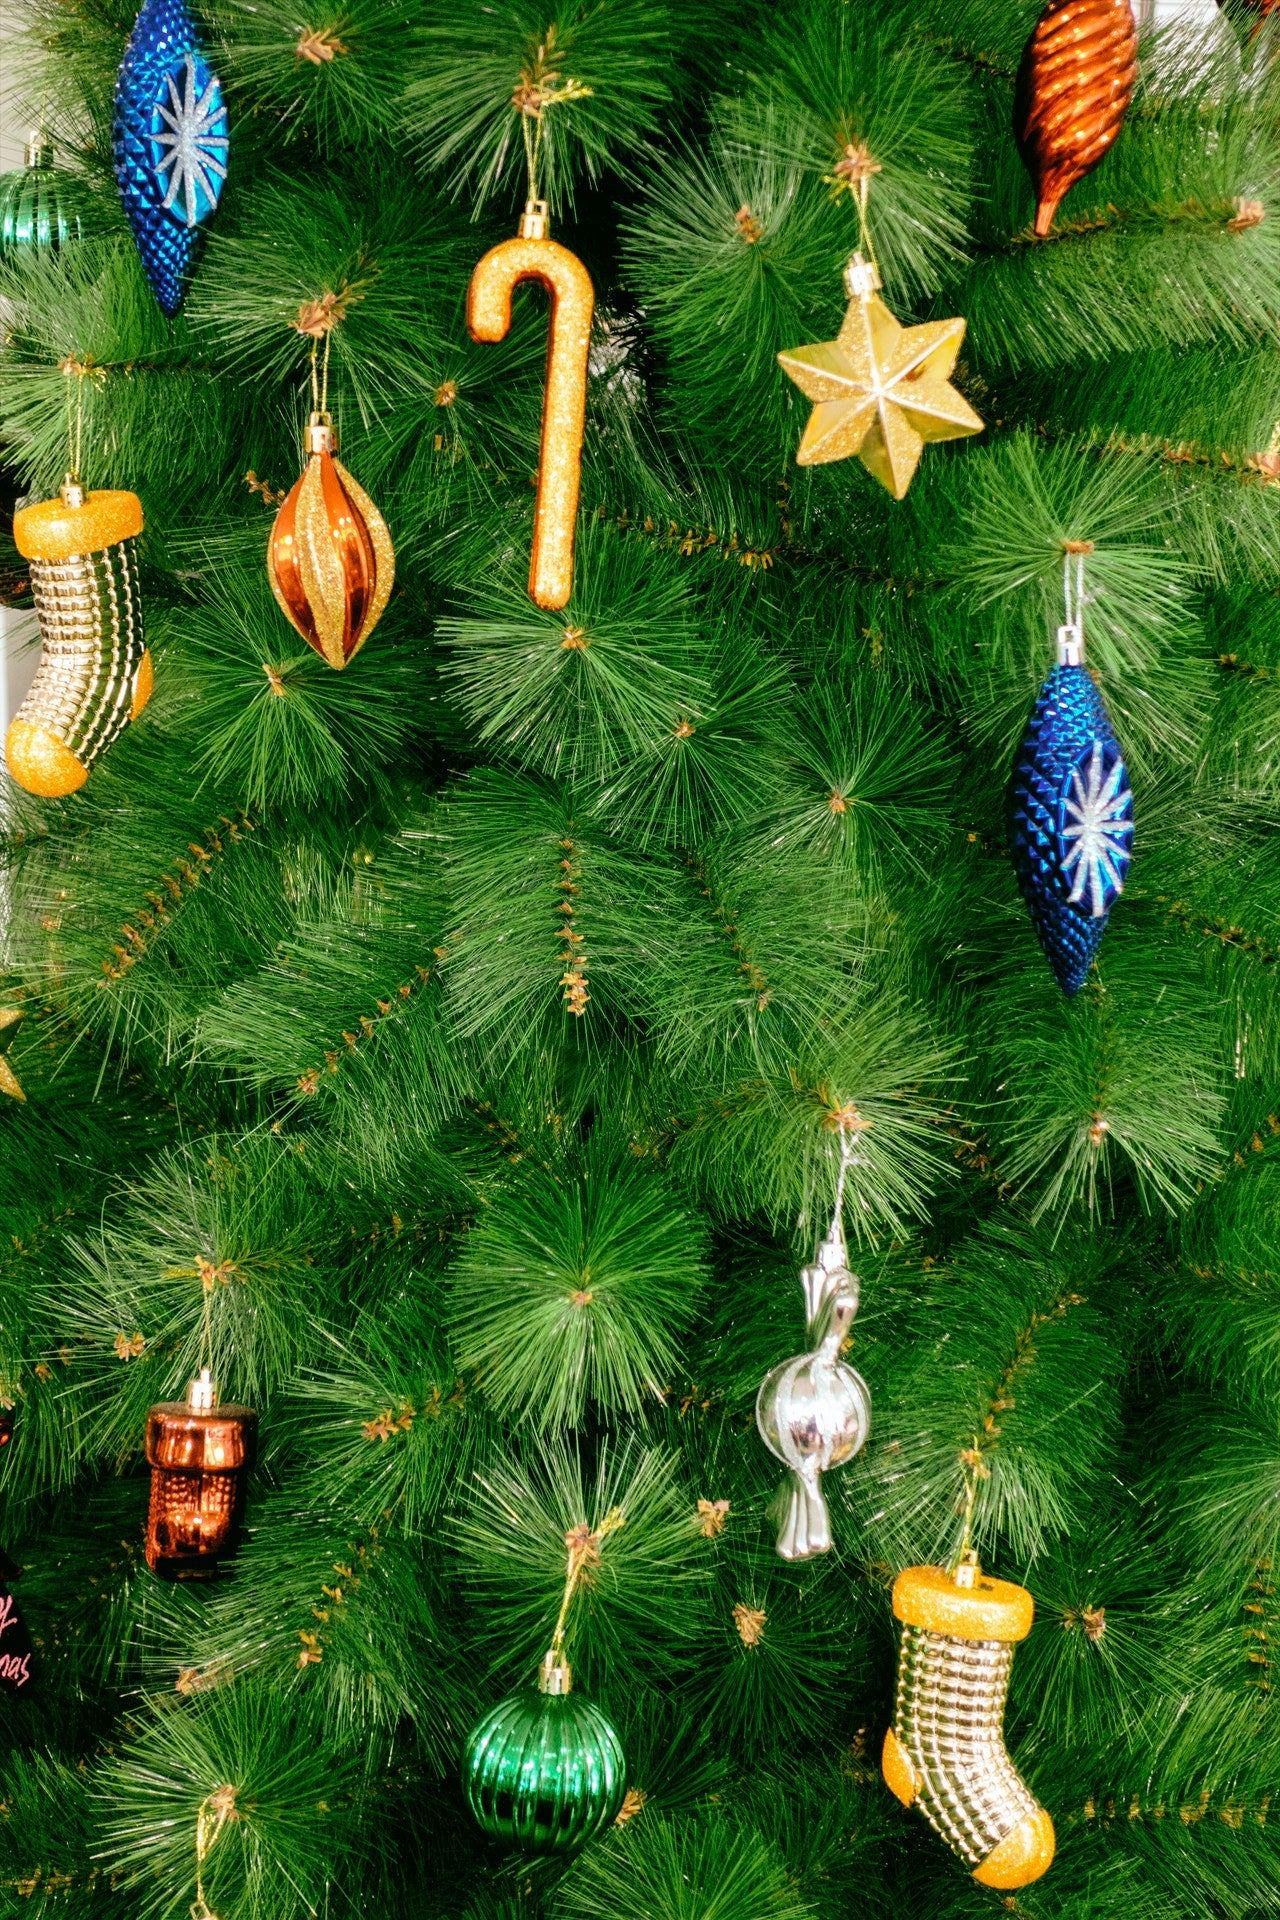 Ornaments - Christmas Trees USA